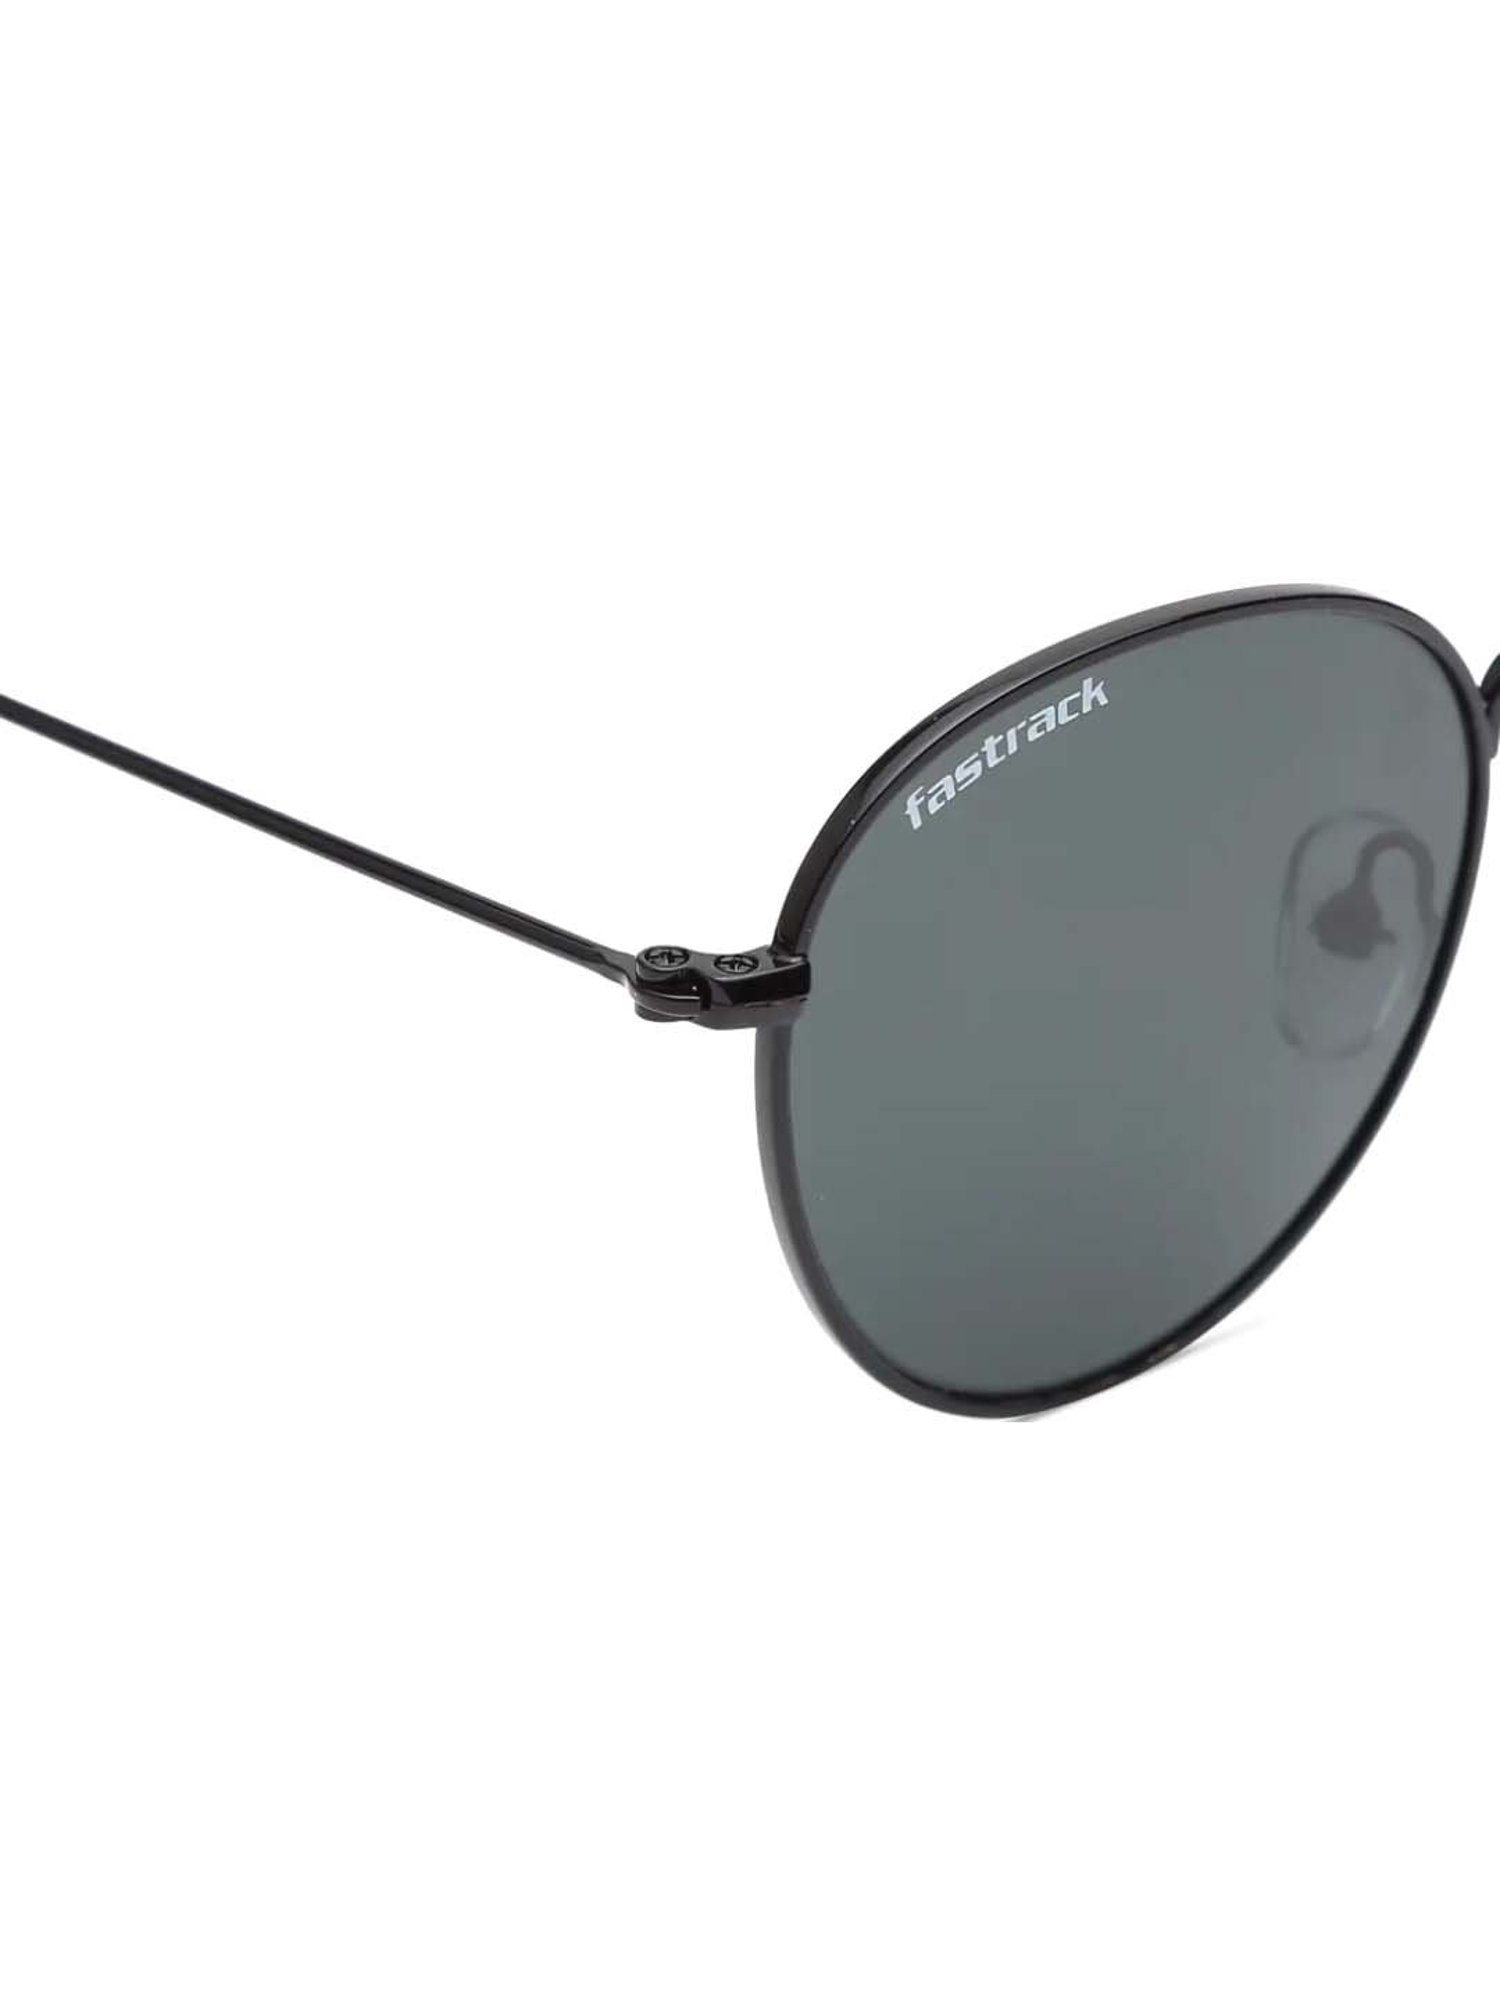 Buy Fastrack Black Aviator Sunglasses (M062GR2V) online